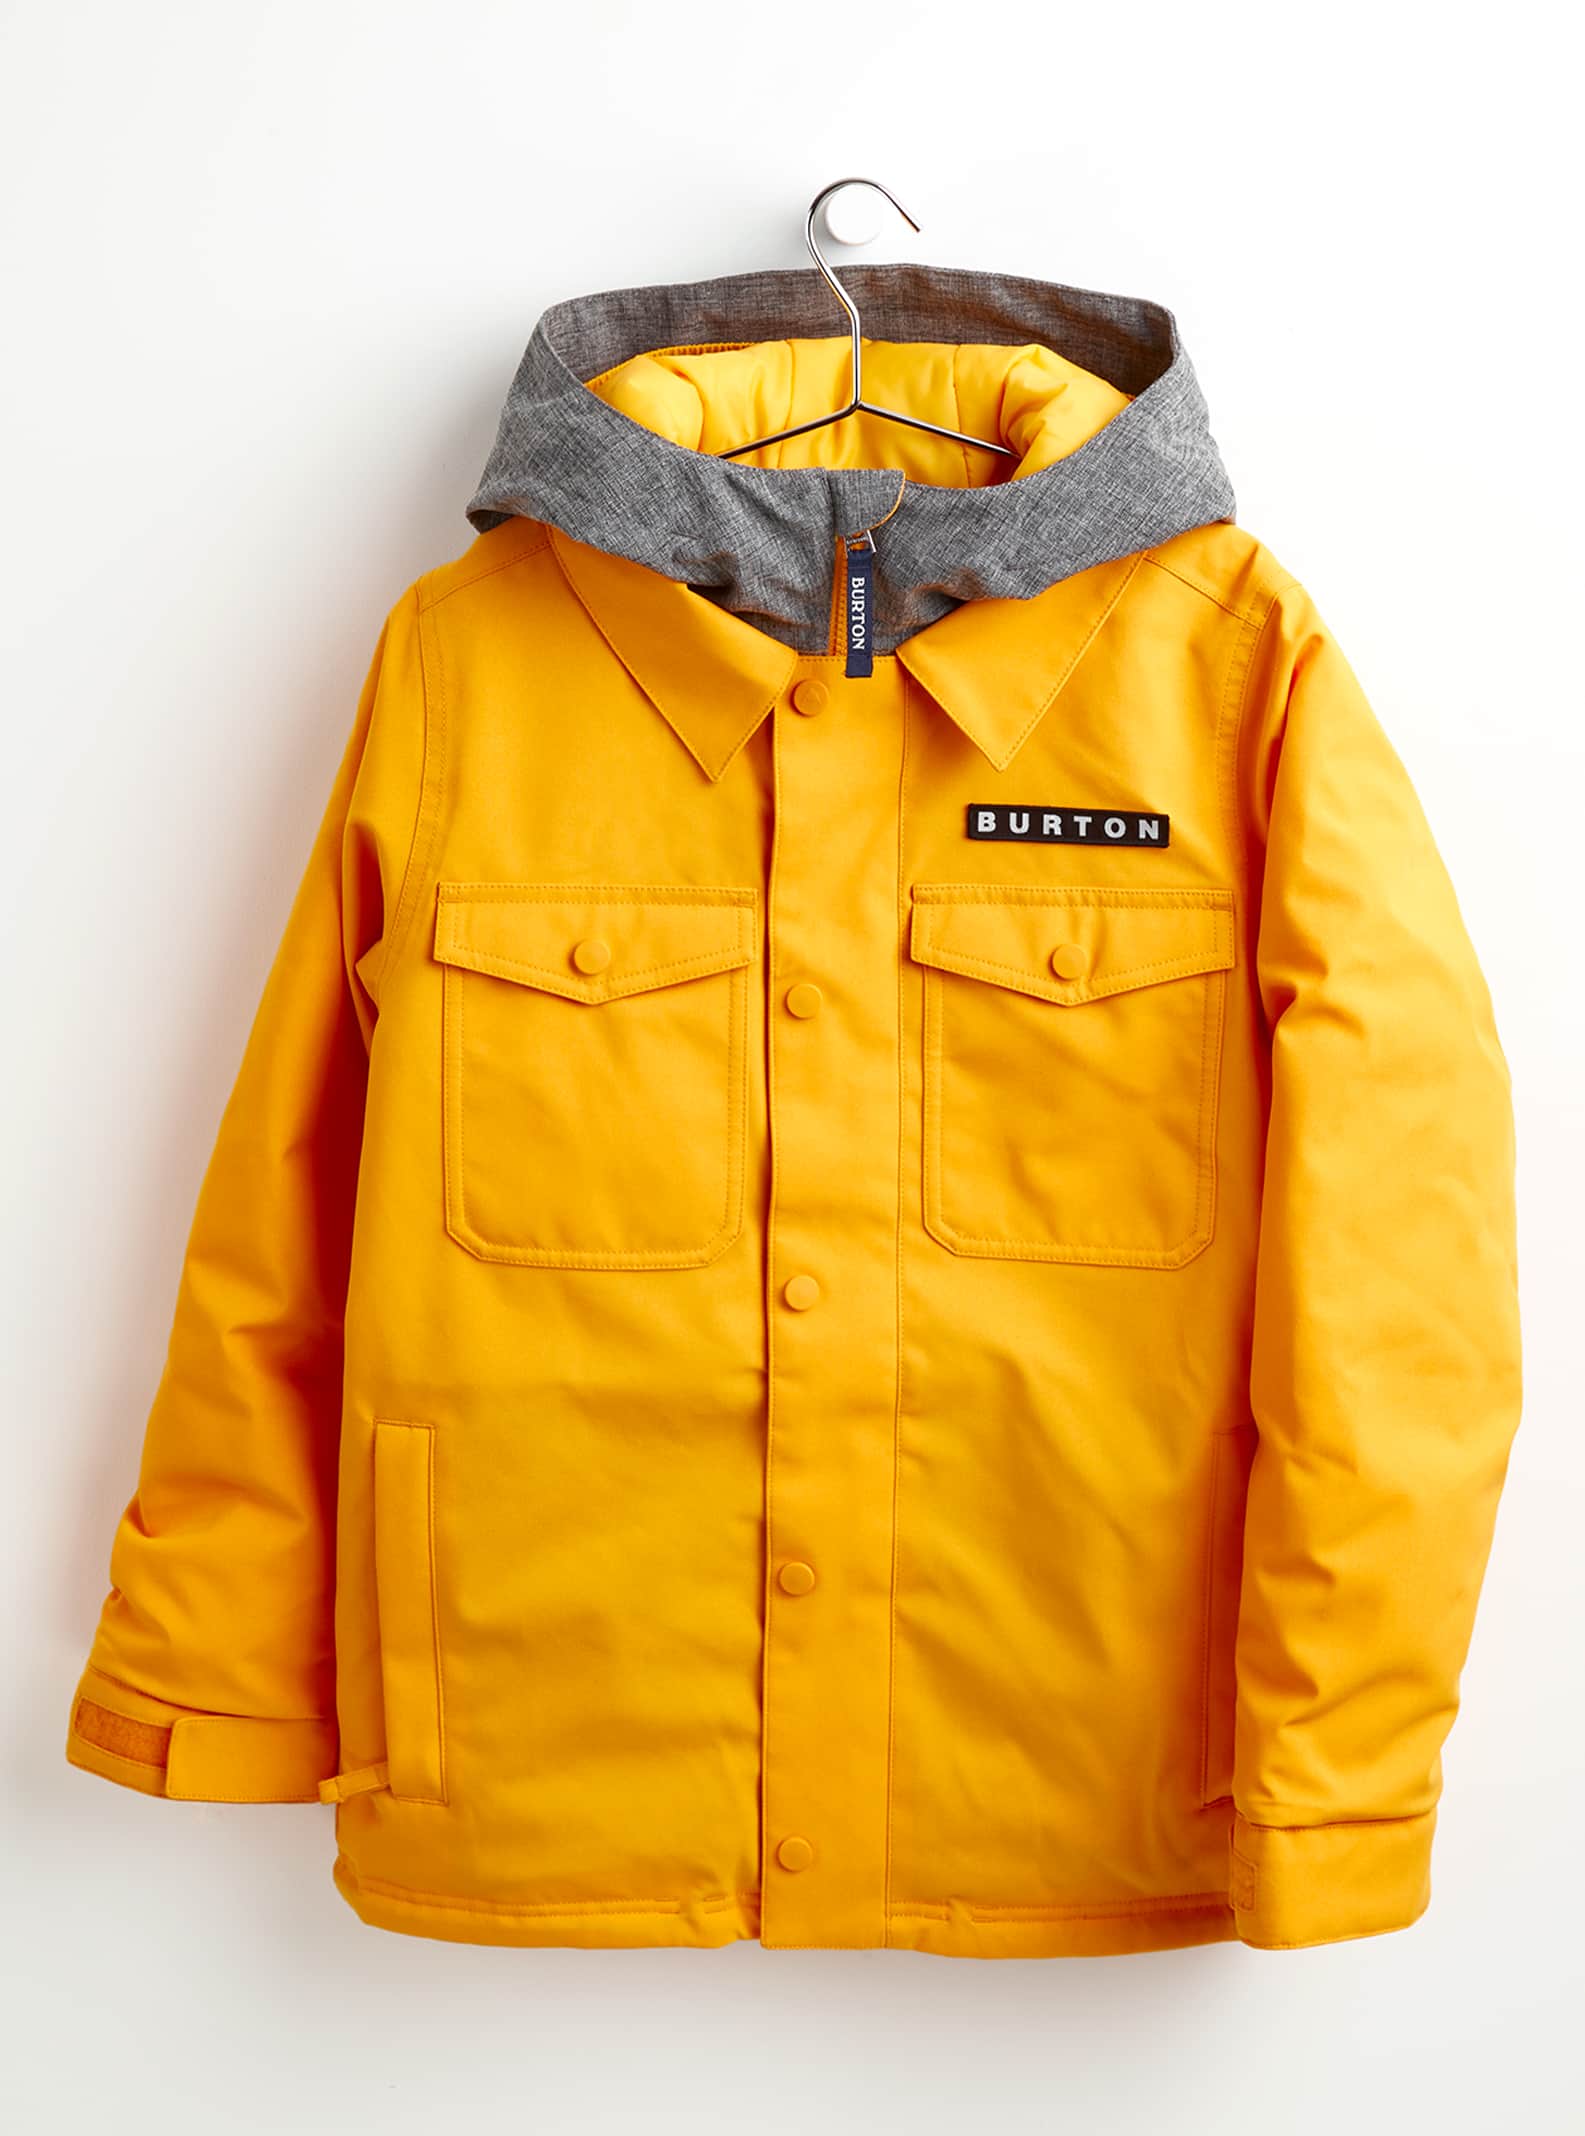 Burton Lodgepole Snowboard jacket (sharkskin)